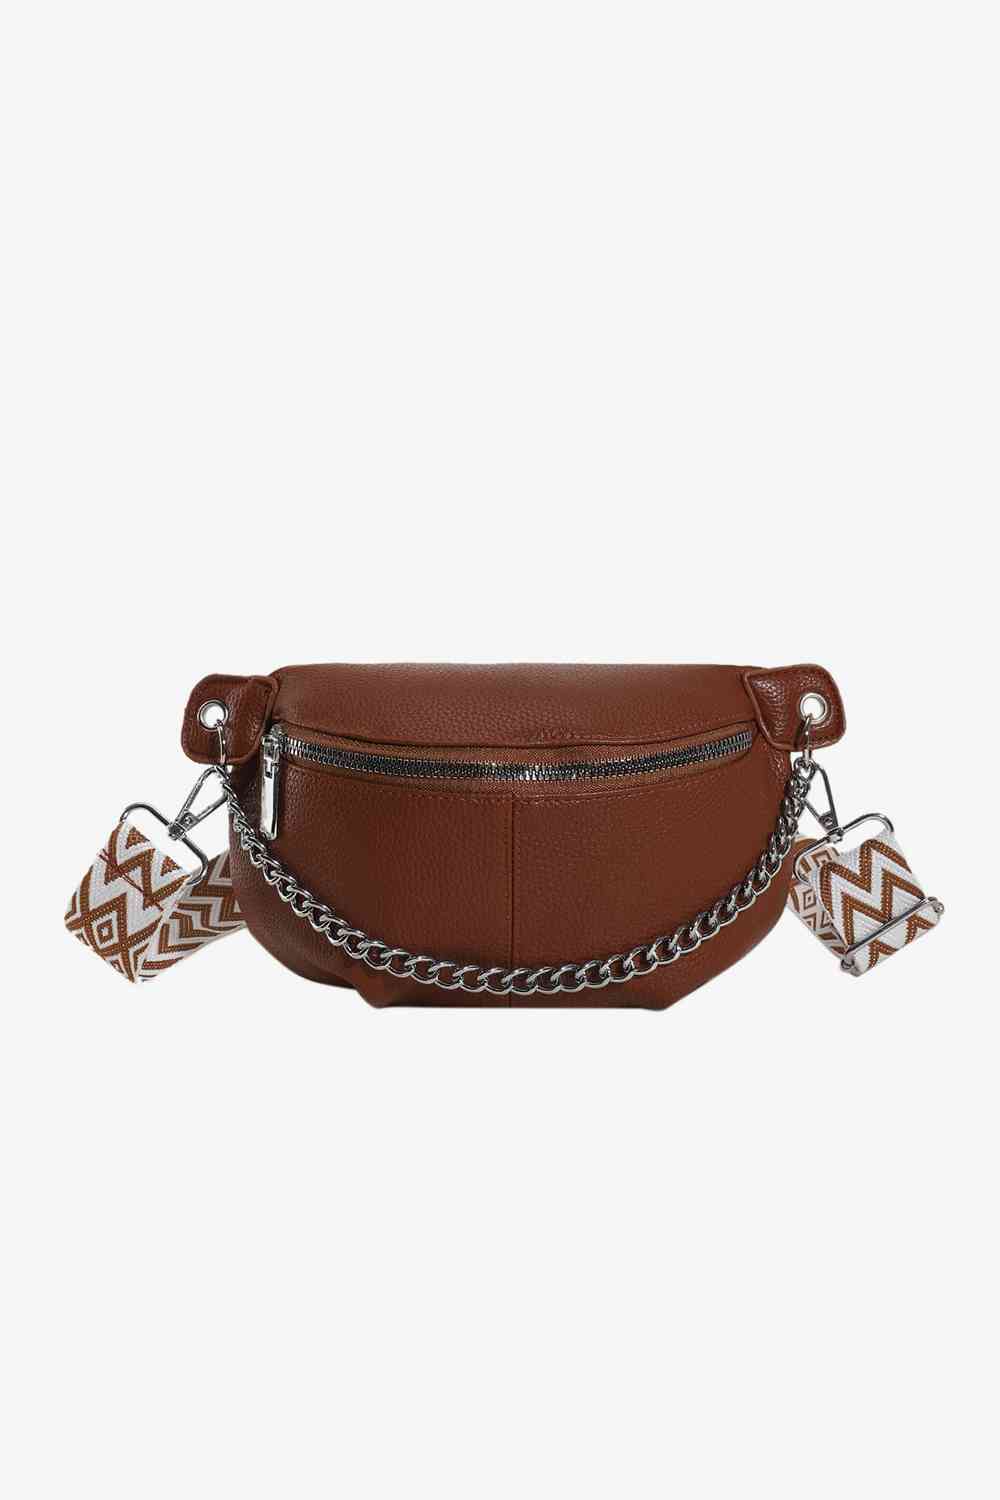 TEEK - Chain Zipper PU Leather Sling Bag BAG TEEK Trend Caramel  